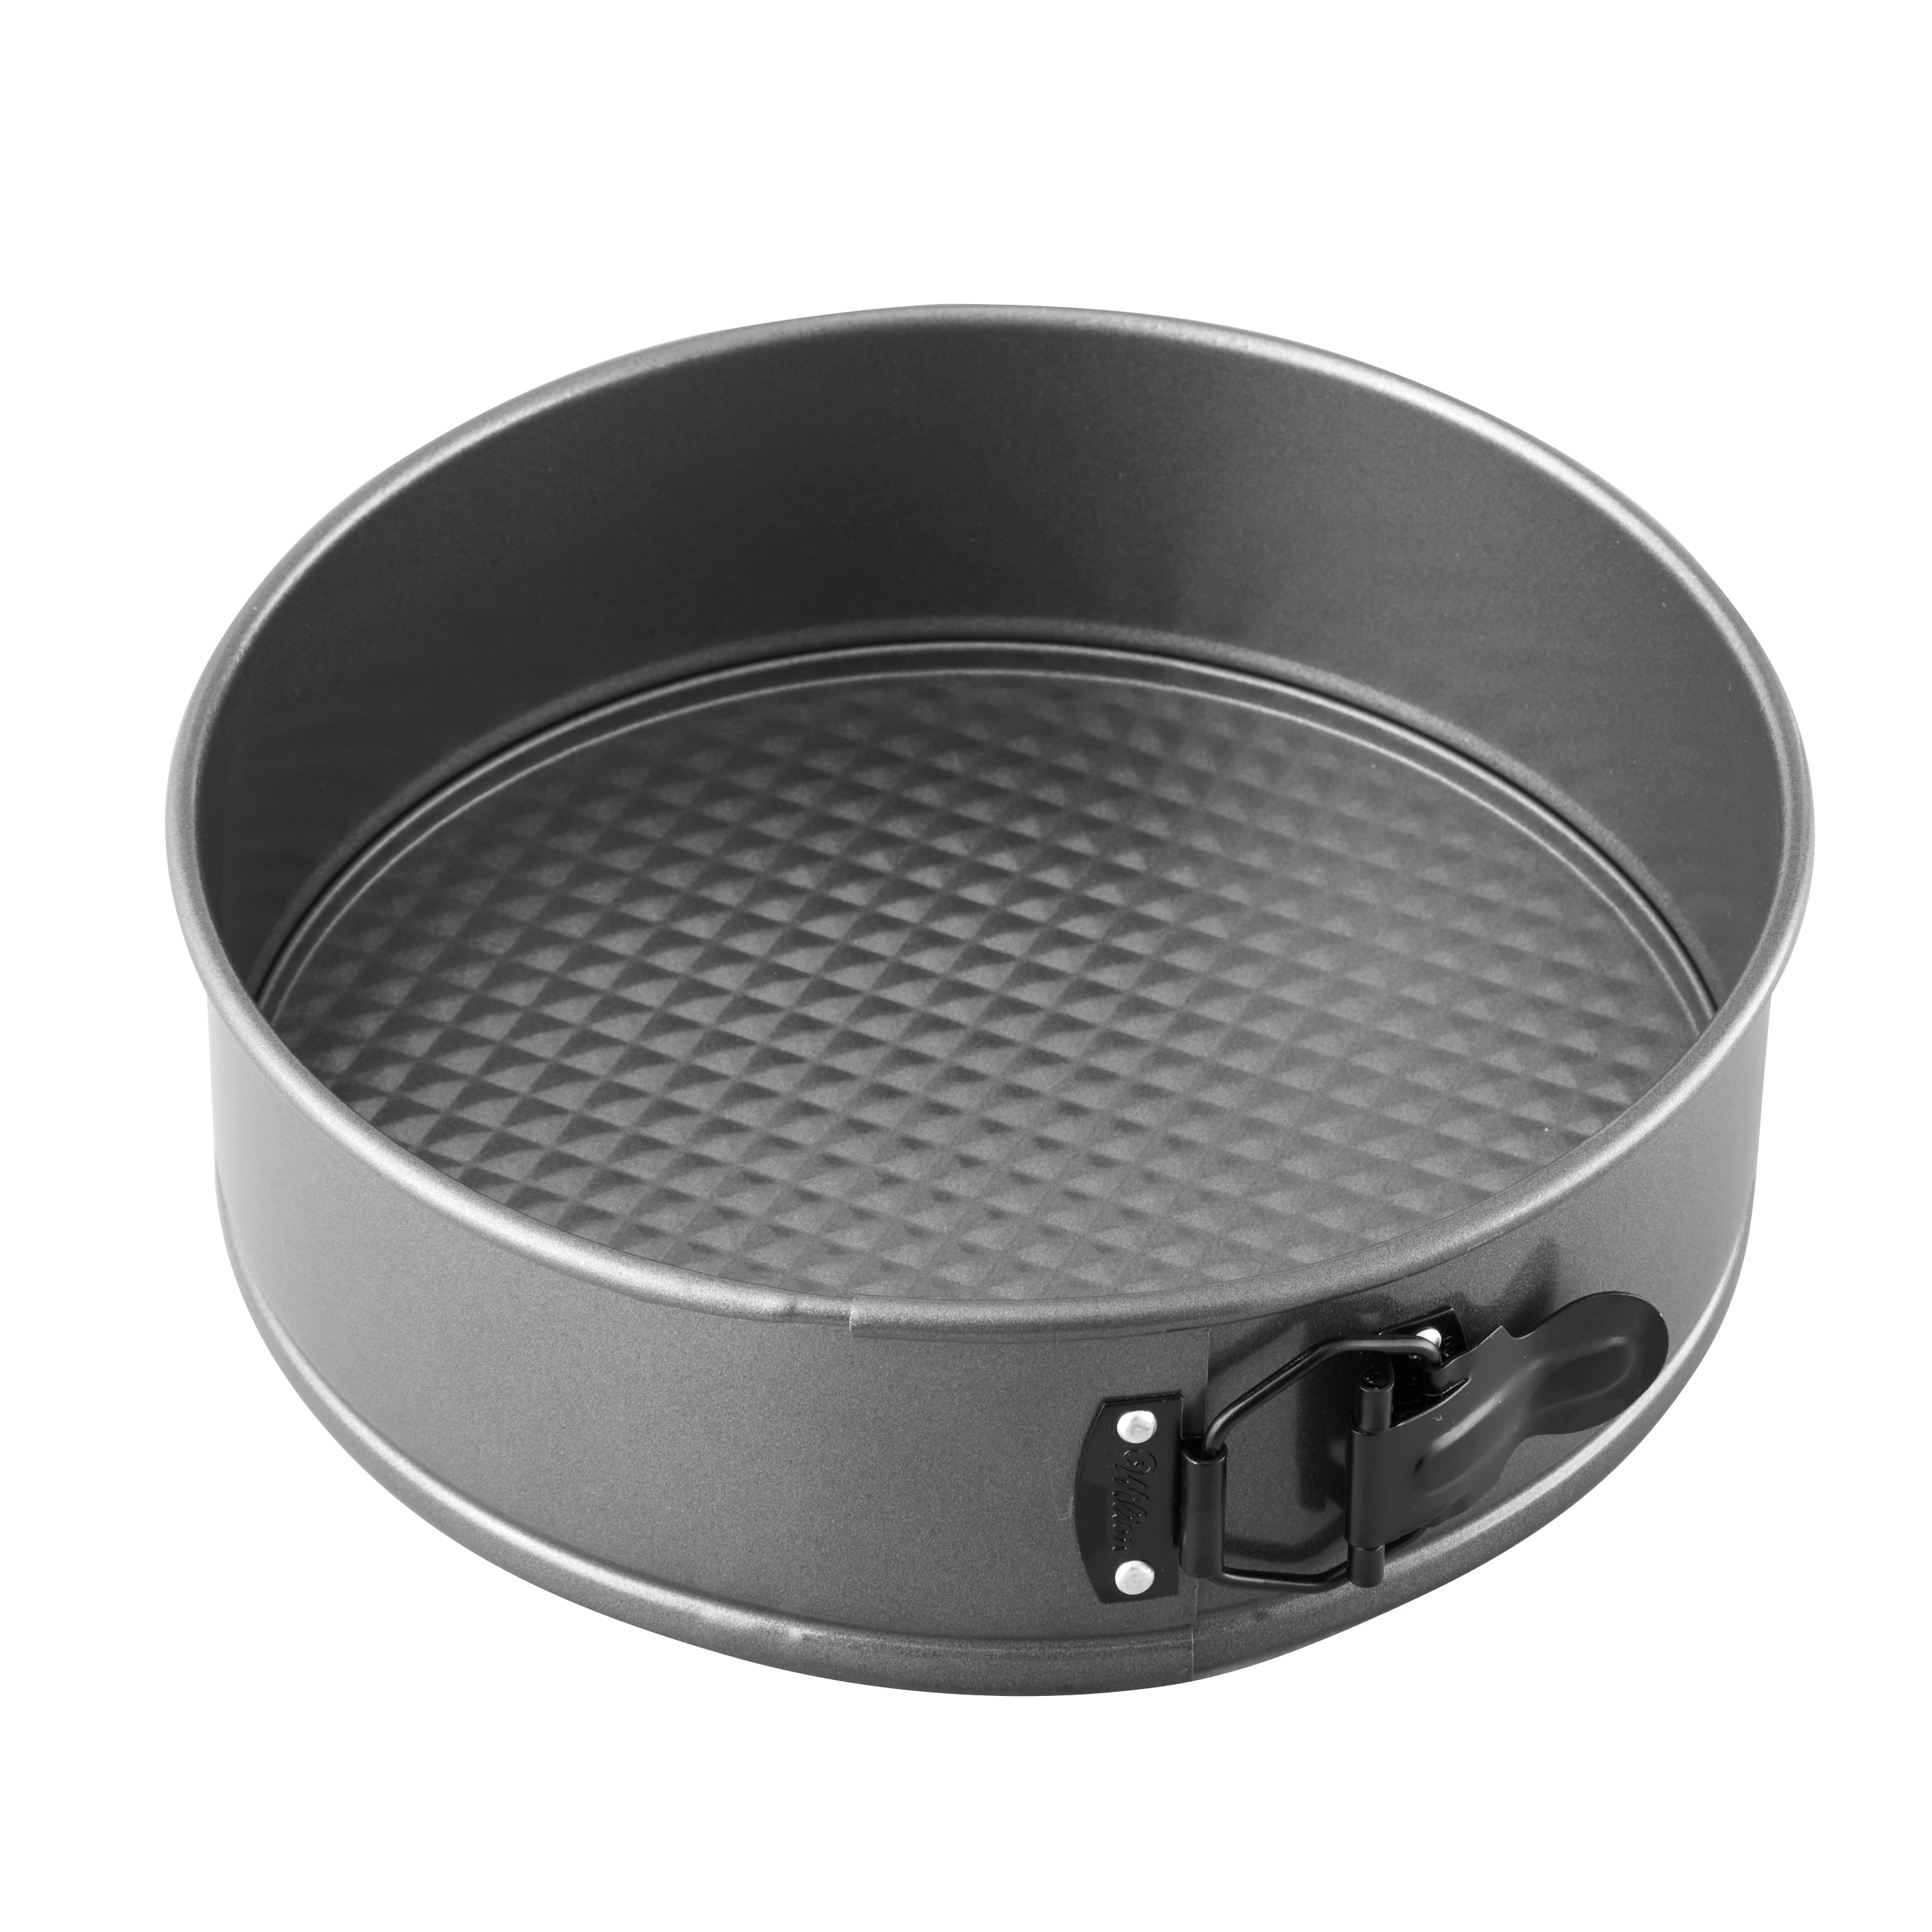 8"Cooking Pan Baking Pan Pan Round Shape Steel Carbon Springform Pan Removable